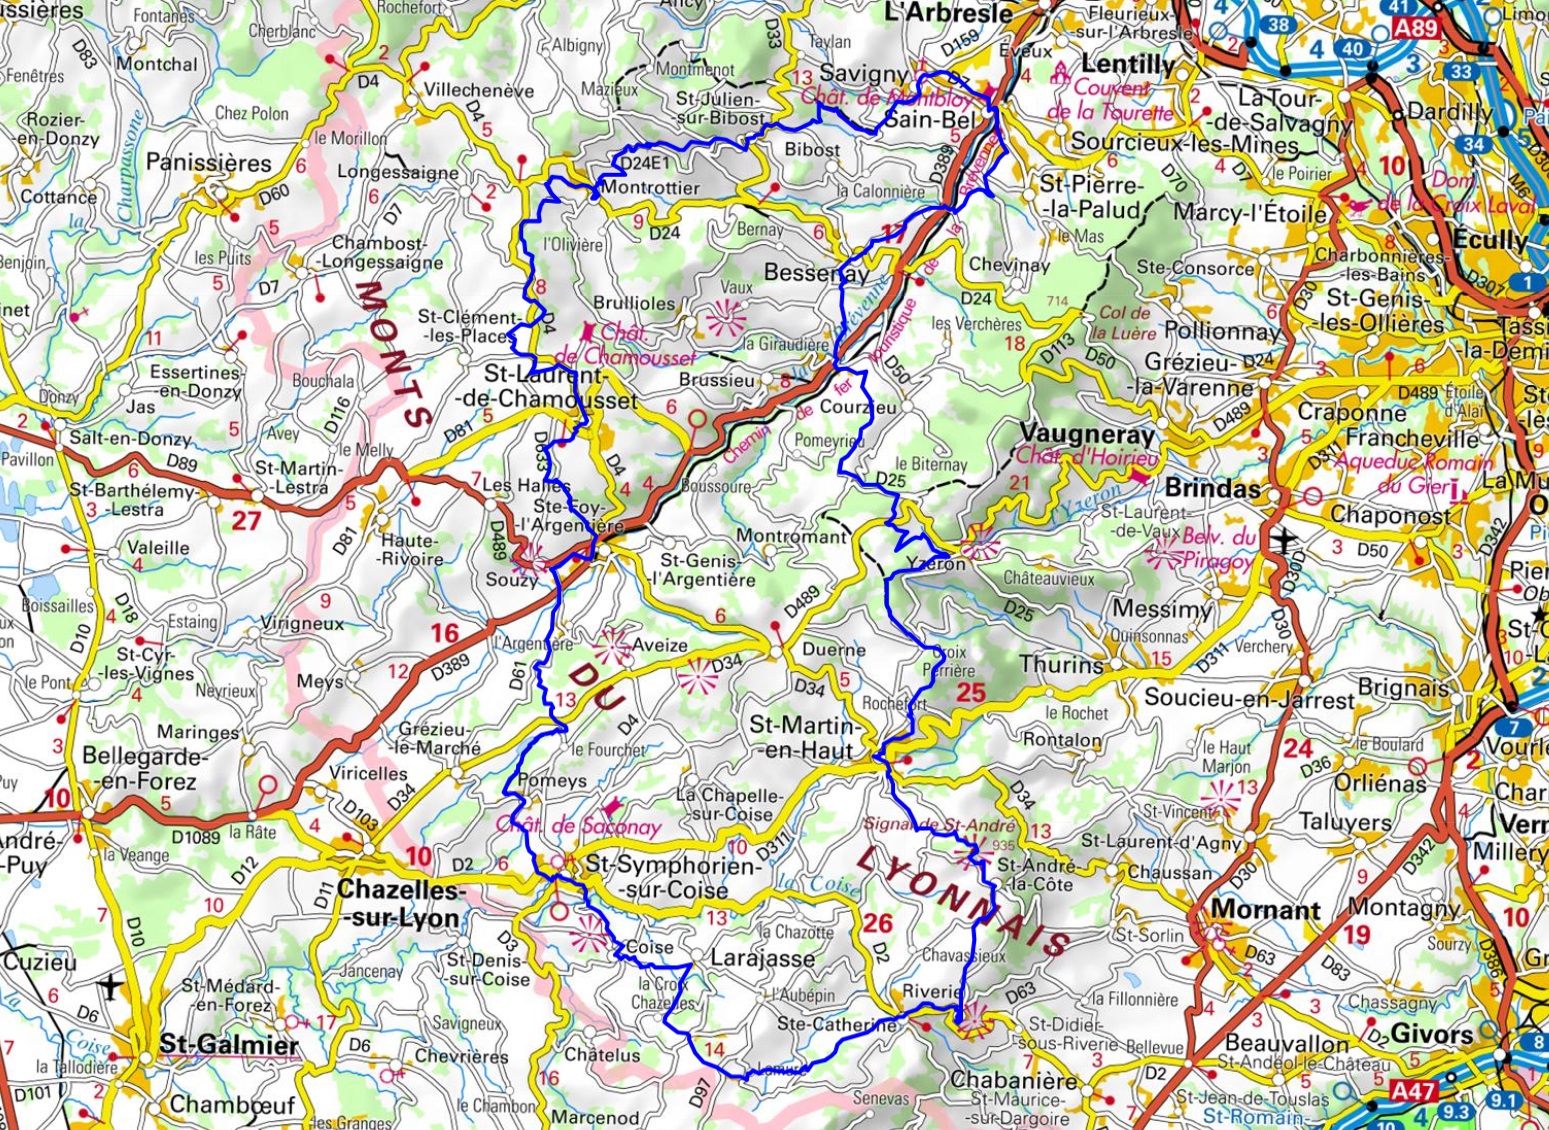 Tour of Monts du Lyonnais (Rhone-Loire) 1